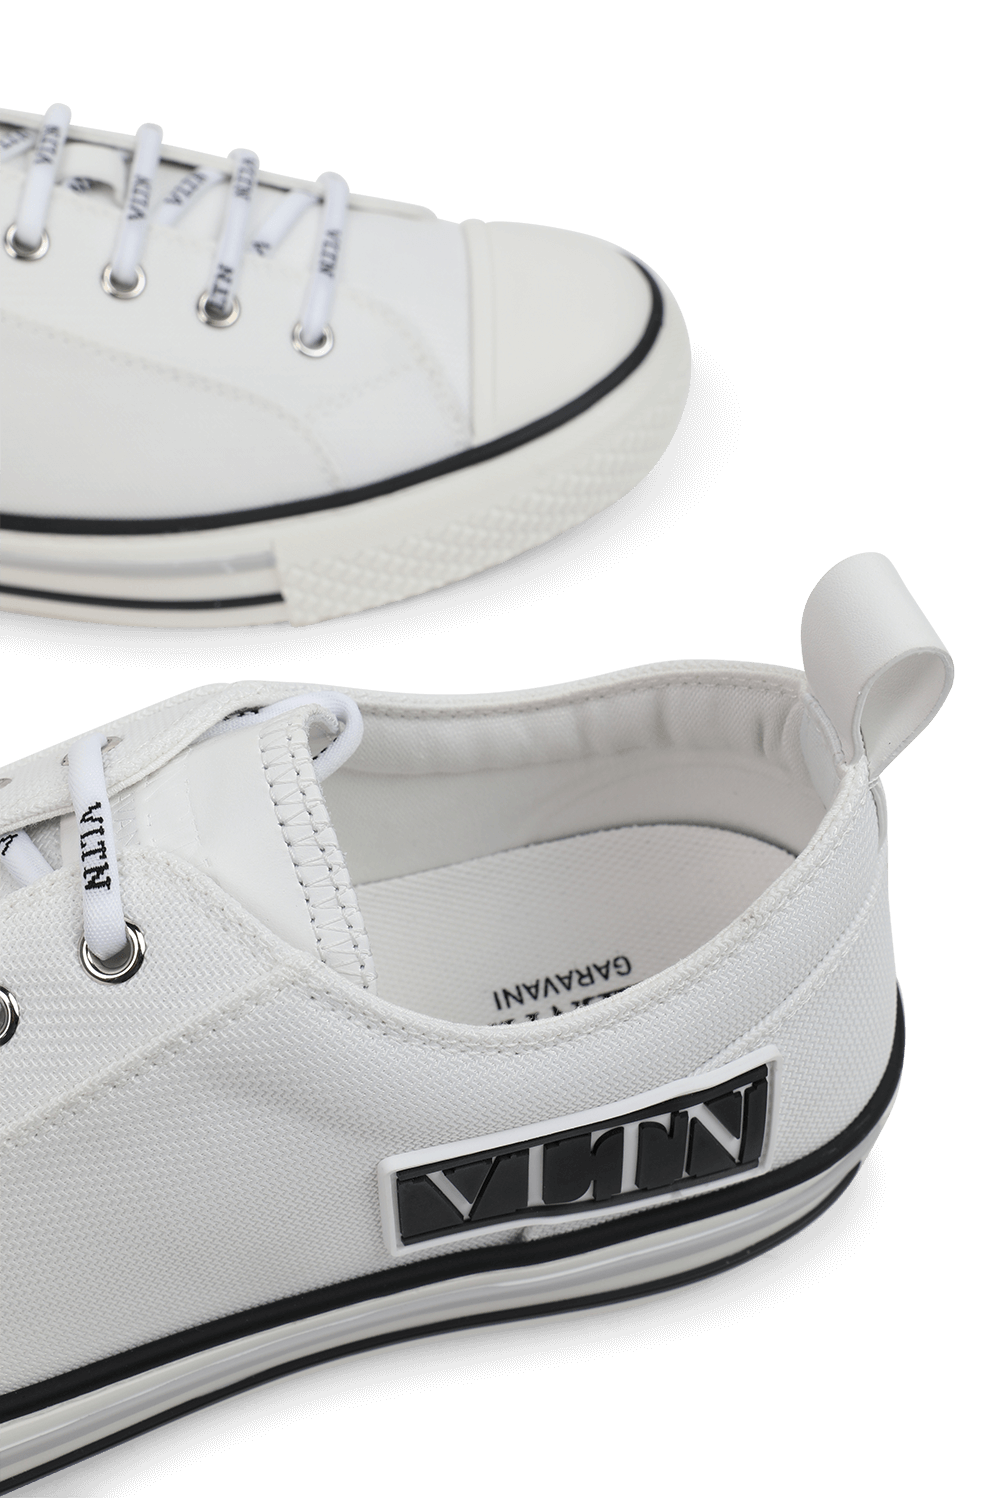 נעלי סניקרס עם תגית ממותגת בגוון לבן VALENTINO GARAVANI